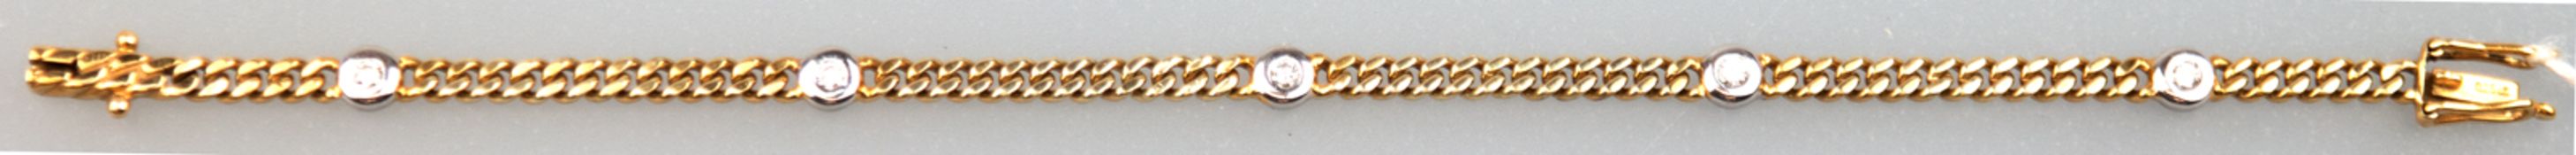 Armband, 585er GG/WG, zus. 9,31 g, besetzt mit 5 Brillanten von zus. ca. 0,15 ct., Panzerkette, Ste